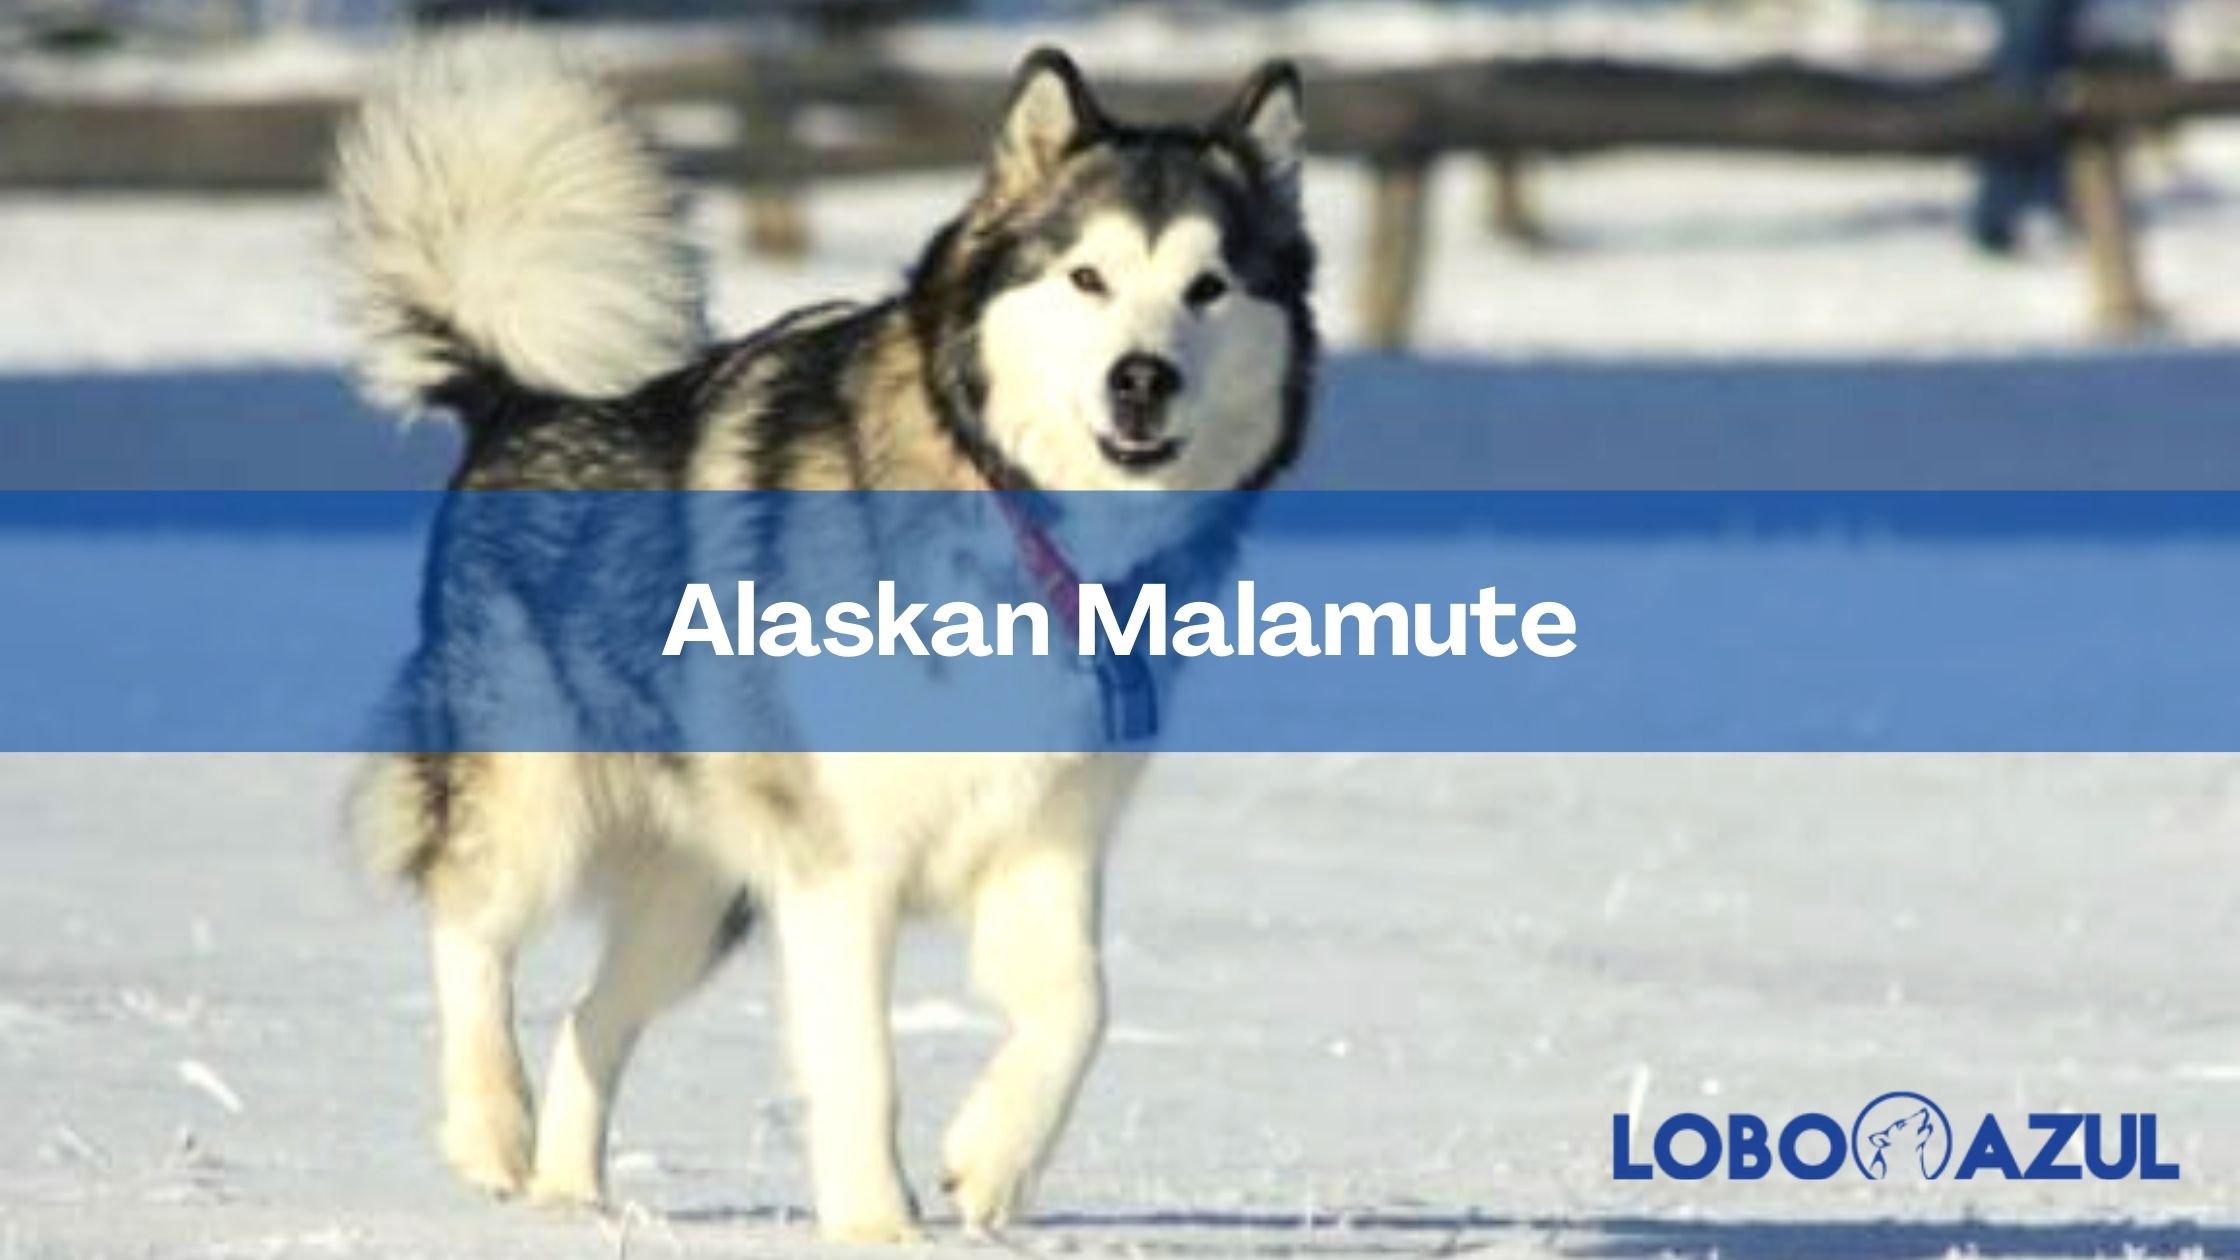 Alaskan Malamute - Origen, características y comportamiento de esta raza